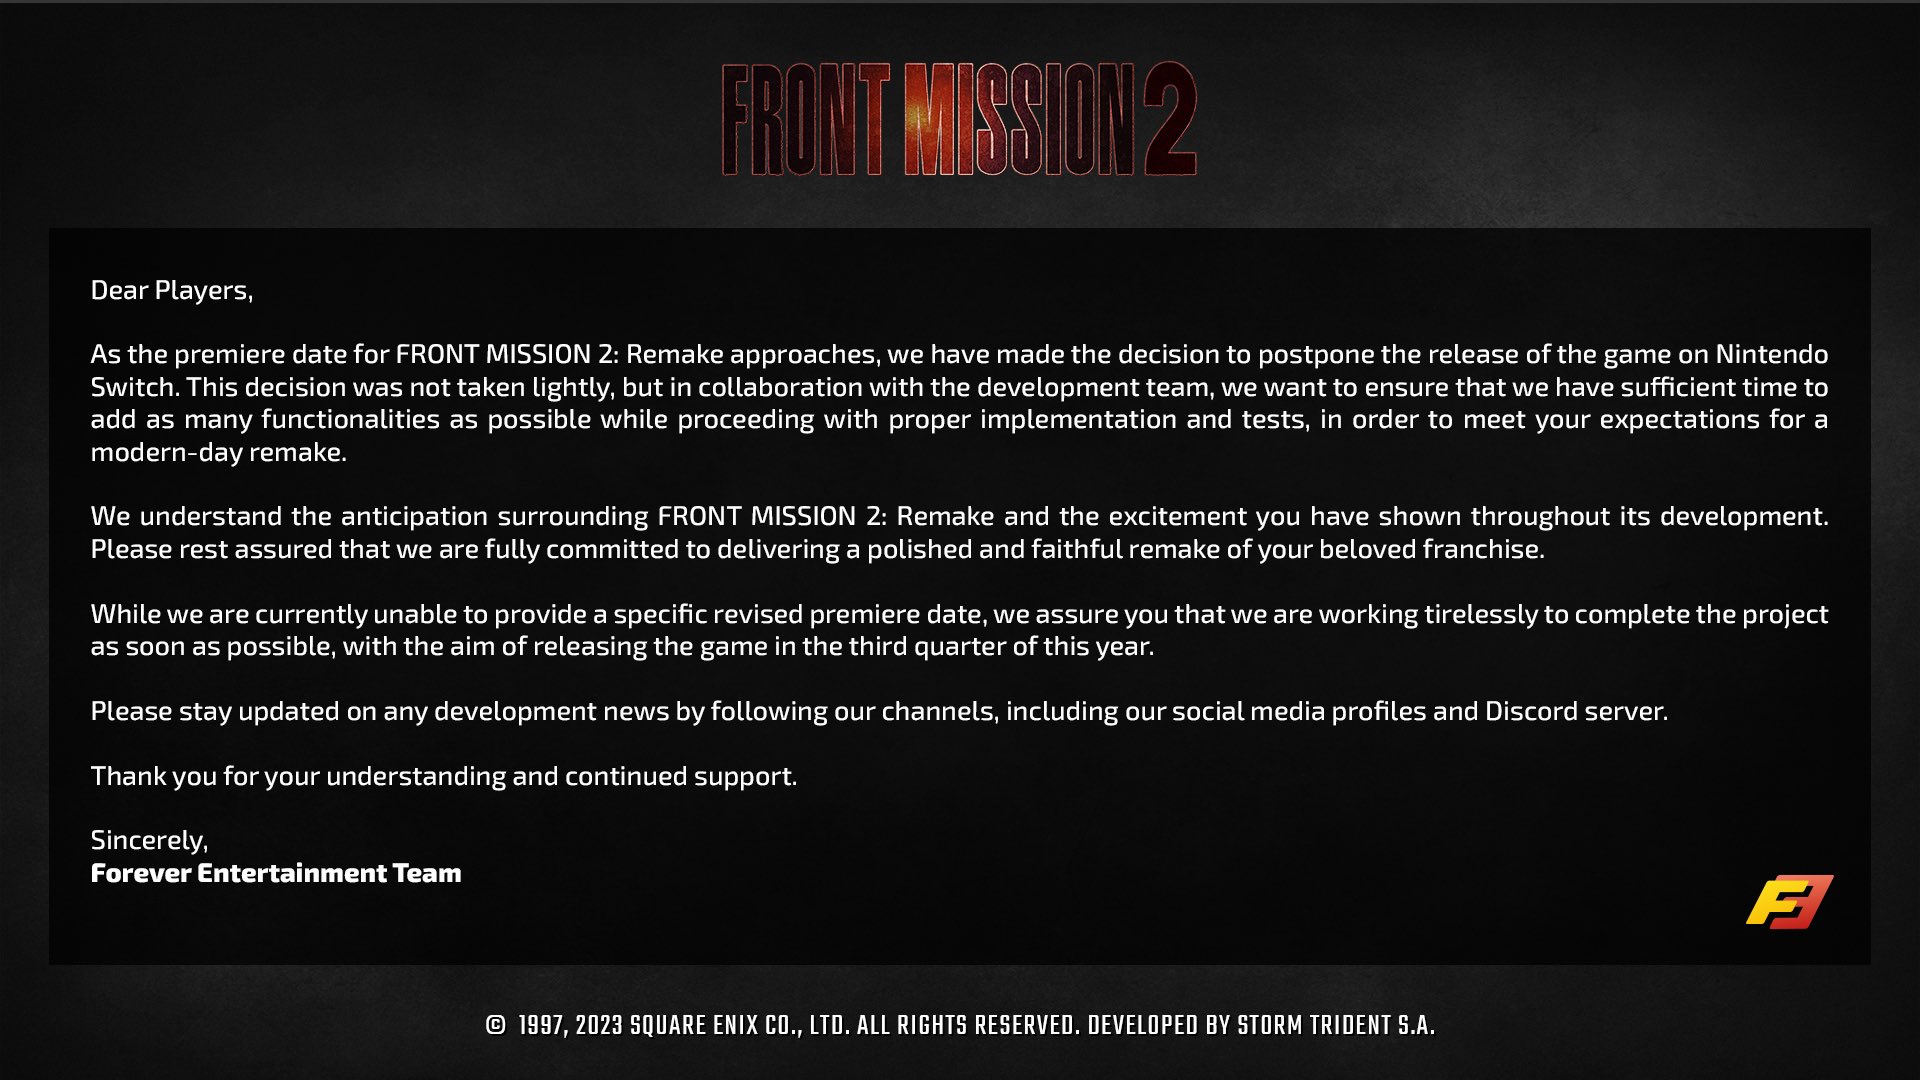 Front mission 2 remake tweet